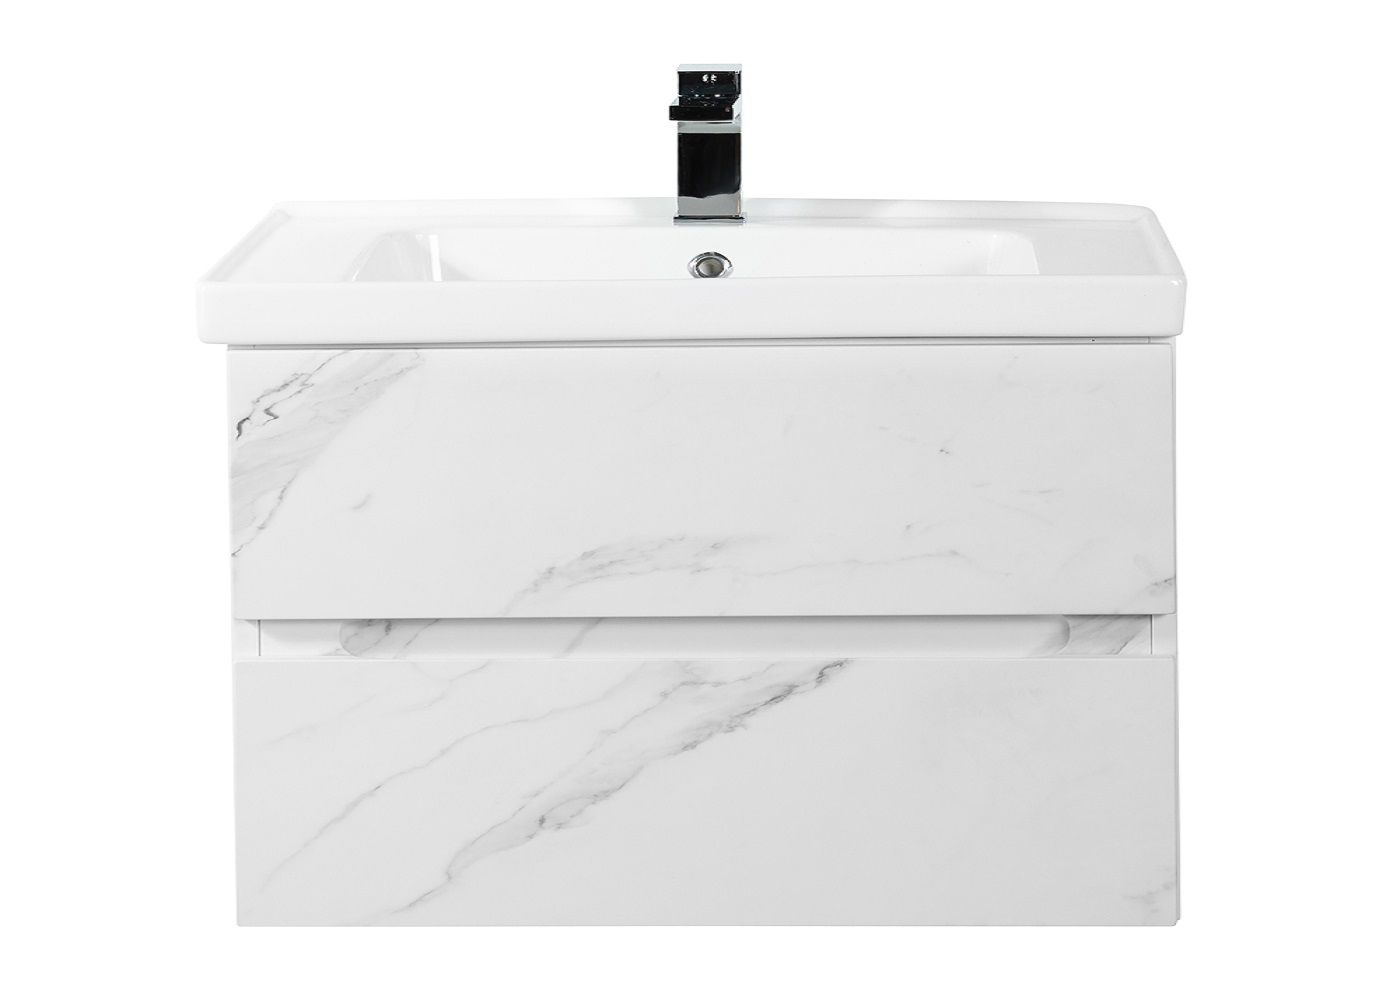 Мебель для ванной комнаты подвесная Art&Max TECHNO 90 см Монти мрамор